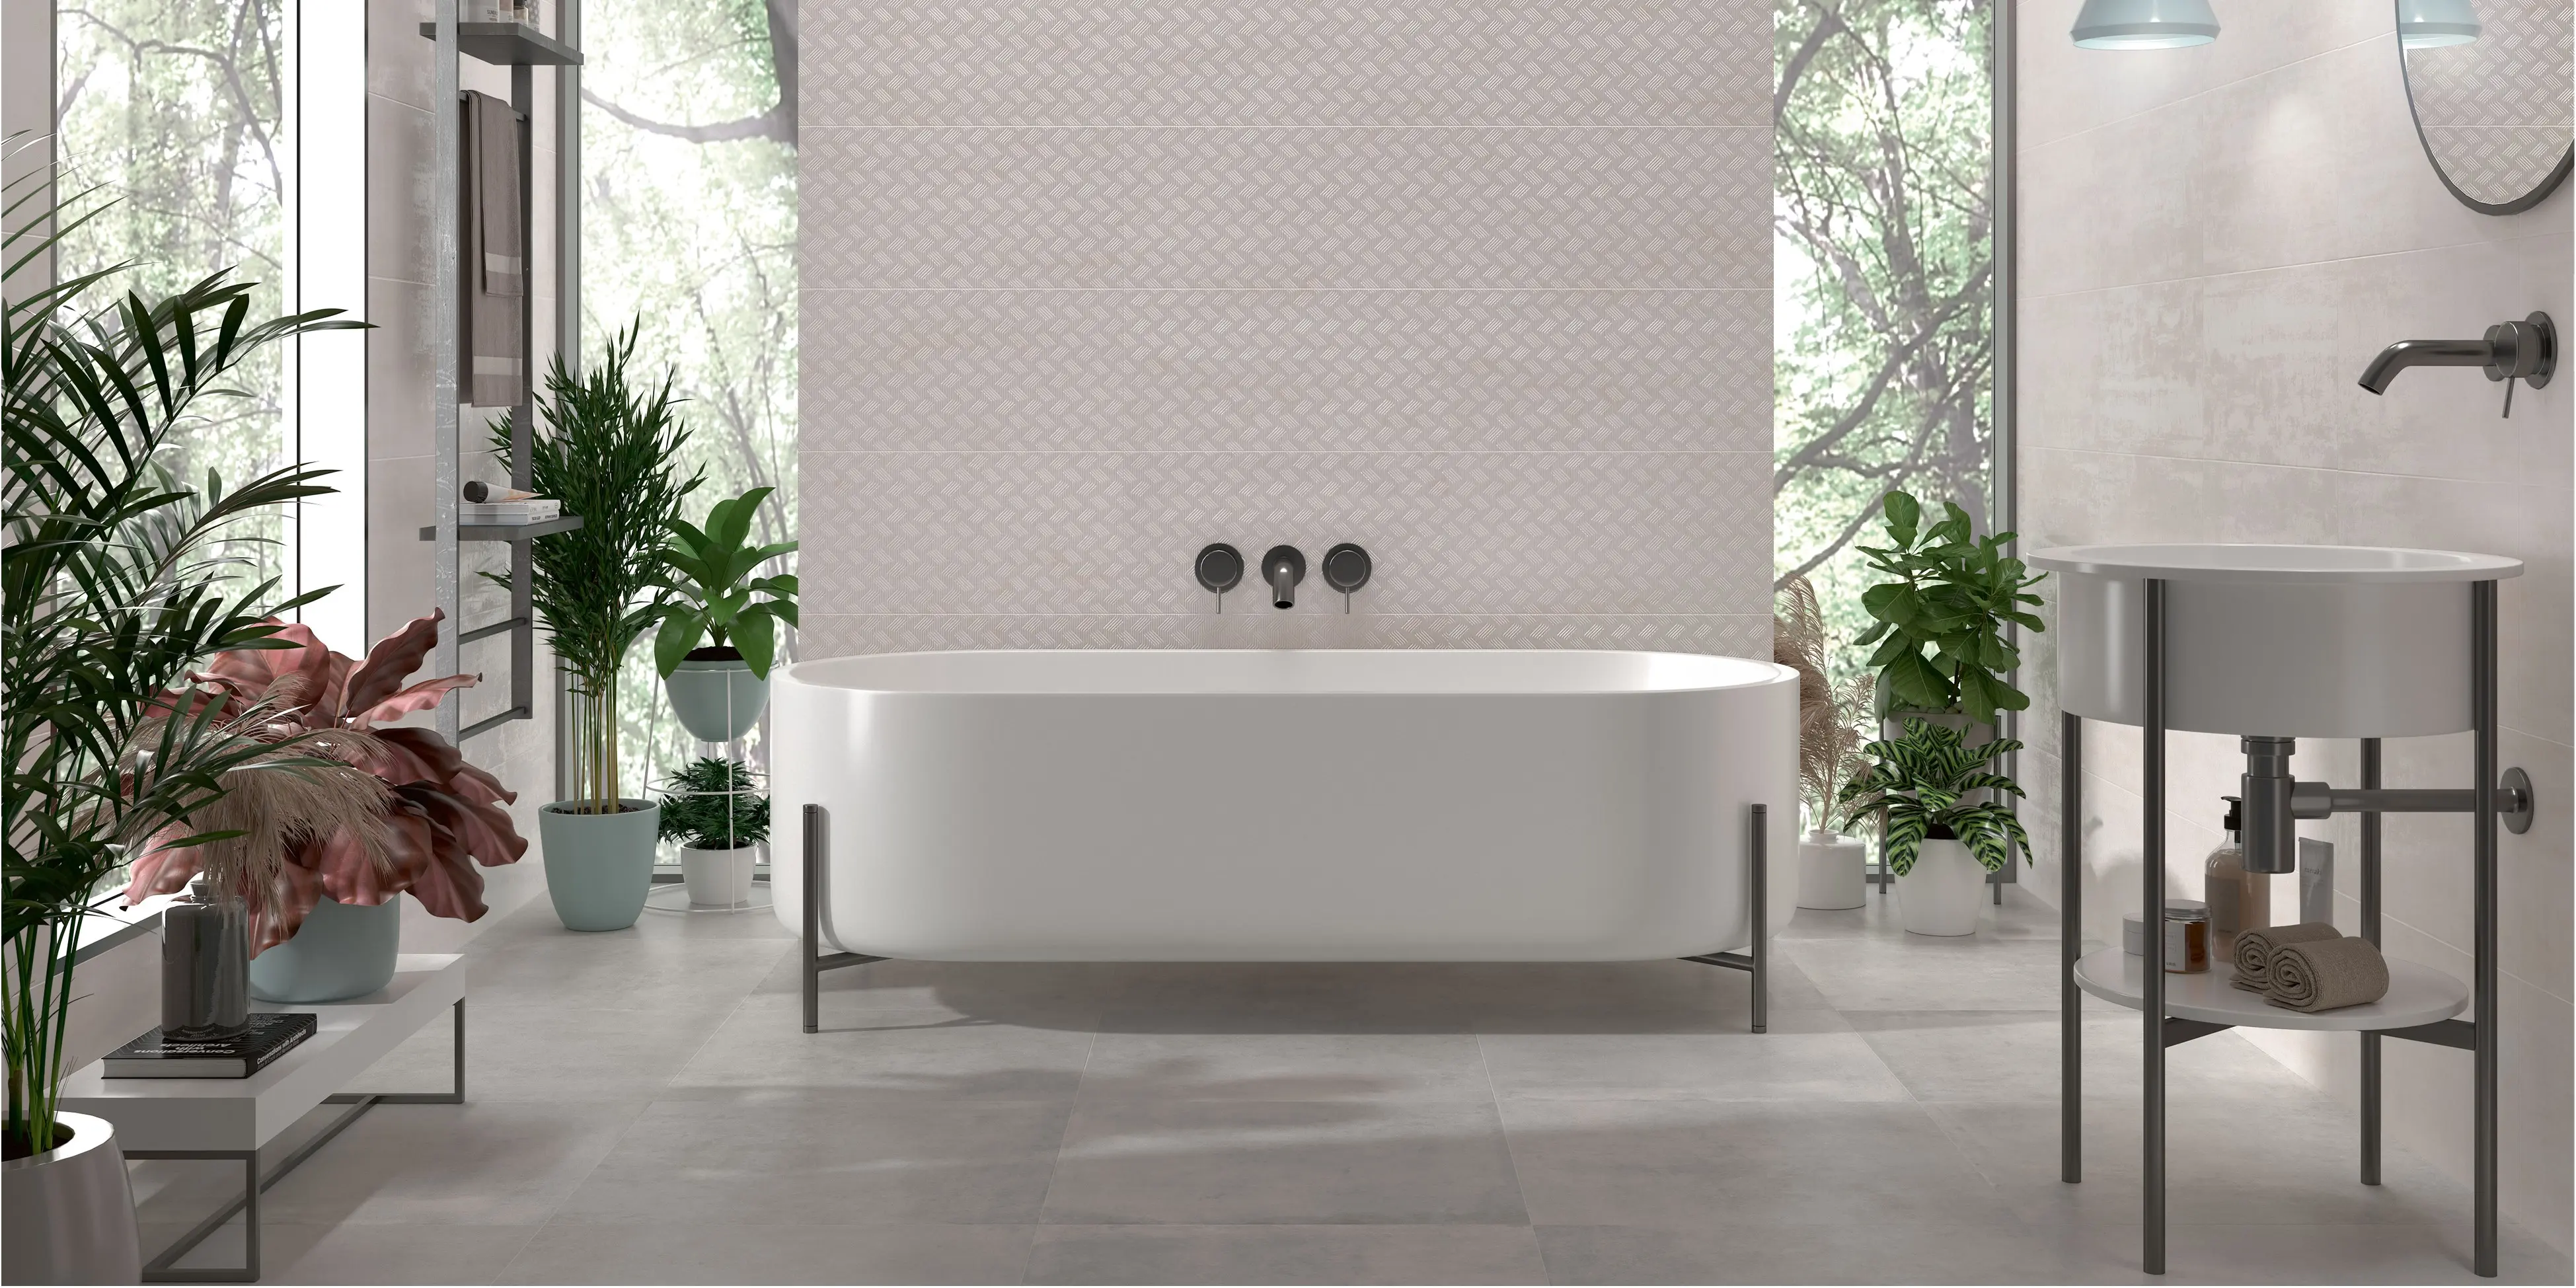 Transformér dit badeværelse med vores metalliske fliser. Skab en moderne oase med glans og stil for en badeoplevelse ud over det sædvanlige.